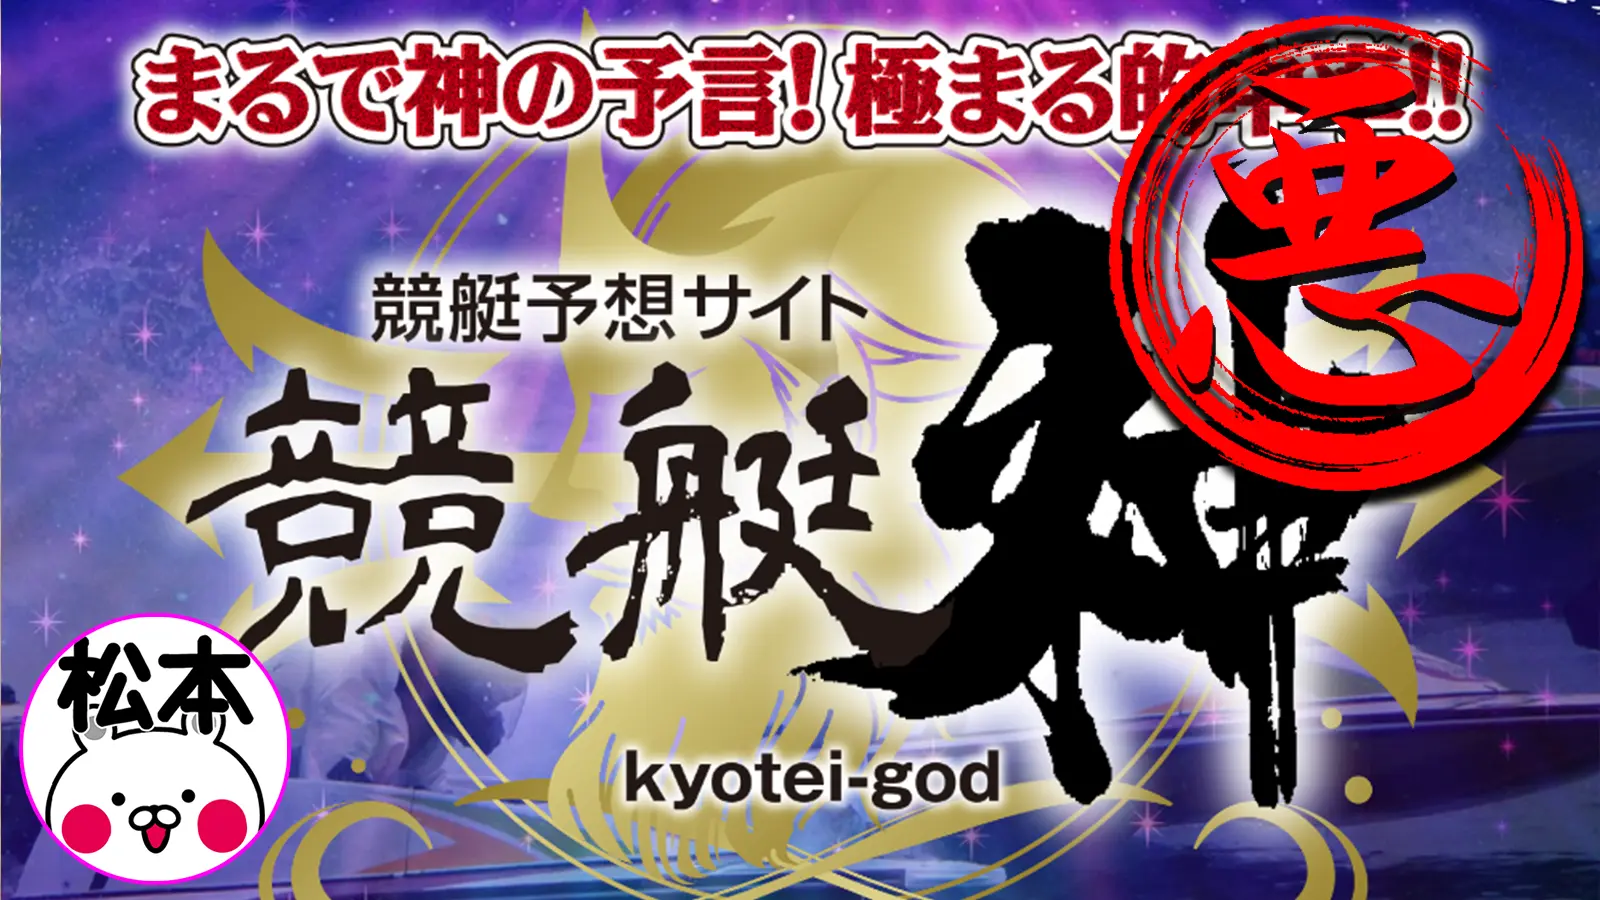 検証の結果、悪徳競艇予想サイトとして認定された競艇予想サイト「競艇神（kyotei-god）」のサムネイル